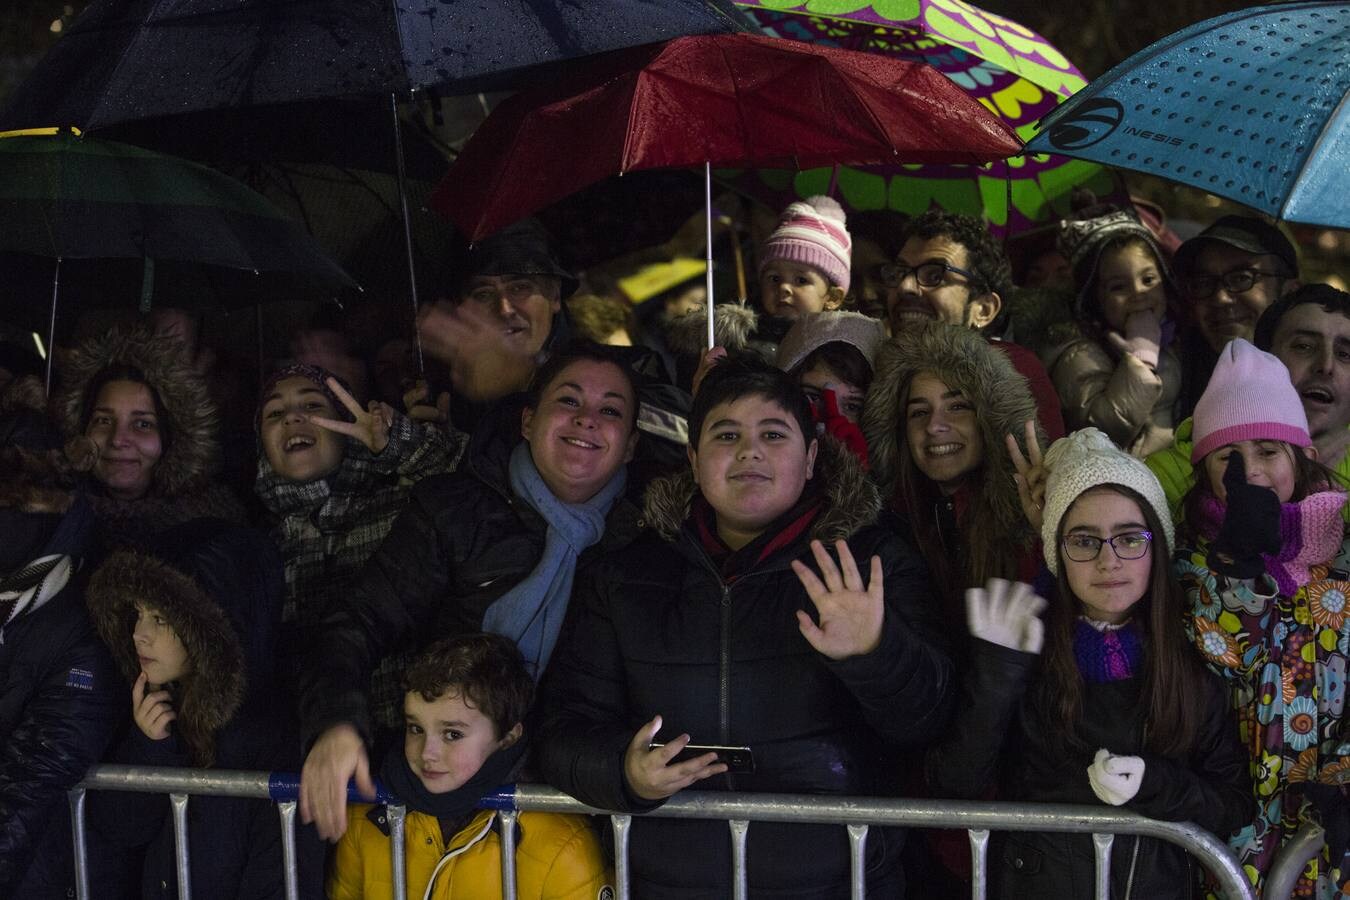 La Cabalgata de Santander estuvo marcada por la intensa lluvia, pero aún así fue seguida por numeroso público que acompañó a la comitiva desde Gamazo hasta la plaza del Ayuntamiento